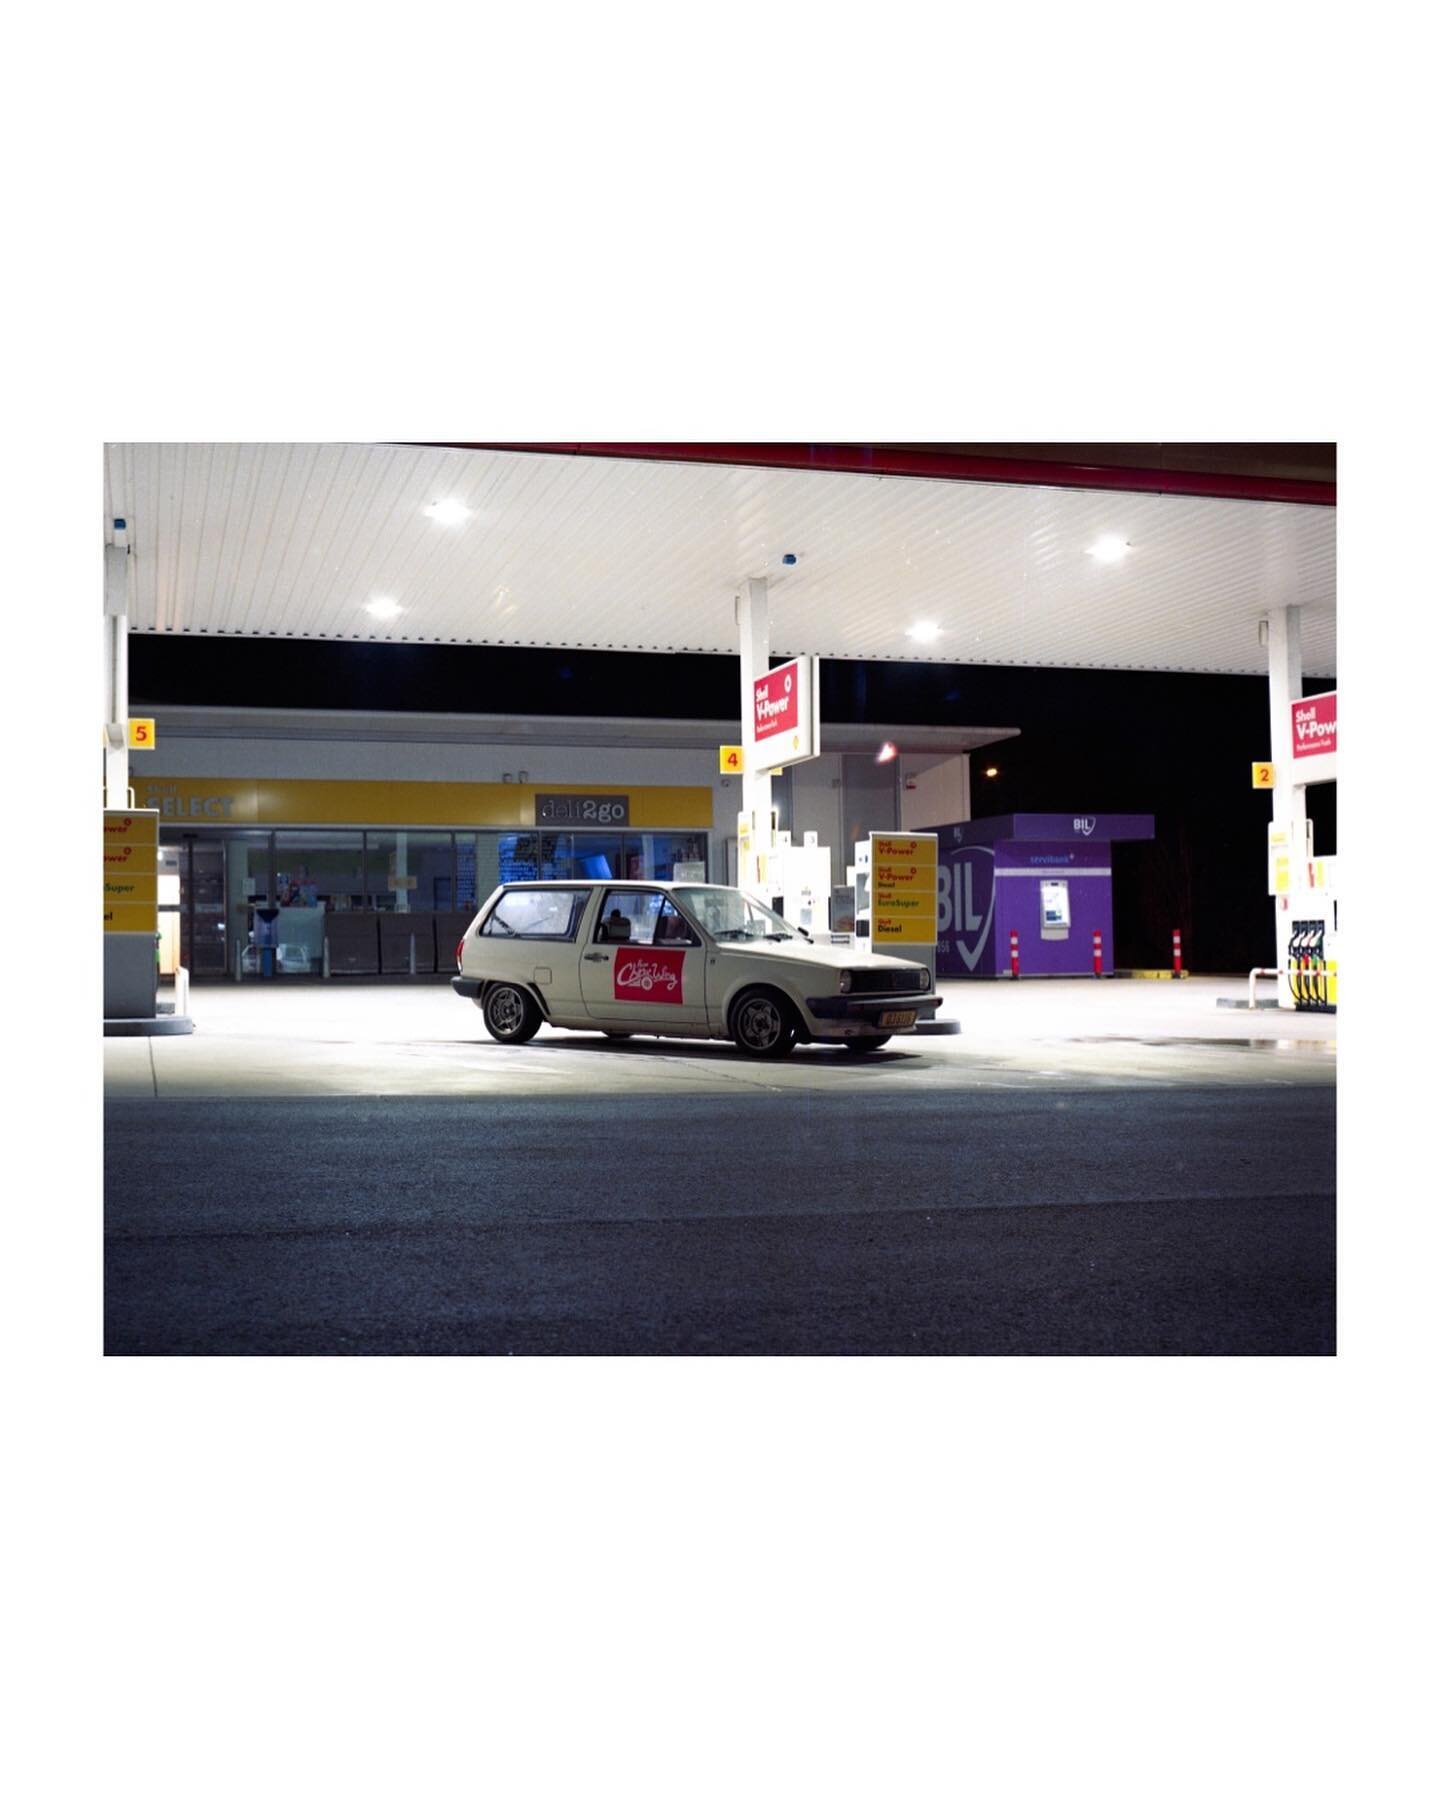 FUEL RUN 1
Camera: #mamiya645 J
Film: Kodak #portra160
Car owner: @nicolascw
18.03.2022 
.
.
.
.
.
#kodakfilm #kodakportra #kodakportra160 #filmphotography #nightphotography #120film #120filmphotography #mamiya #mediumformatfilm #gasstation #gasstati